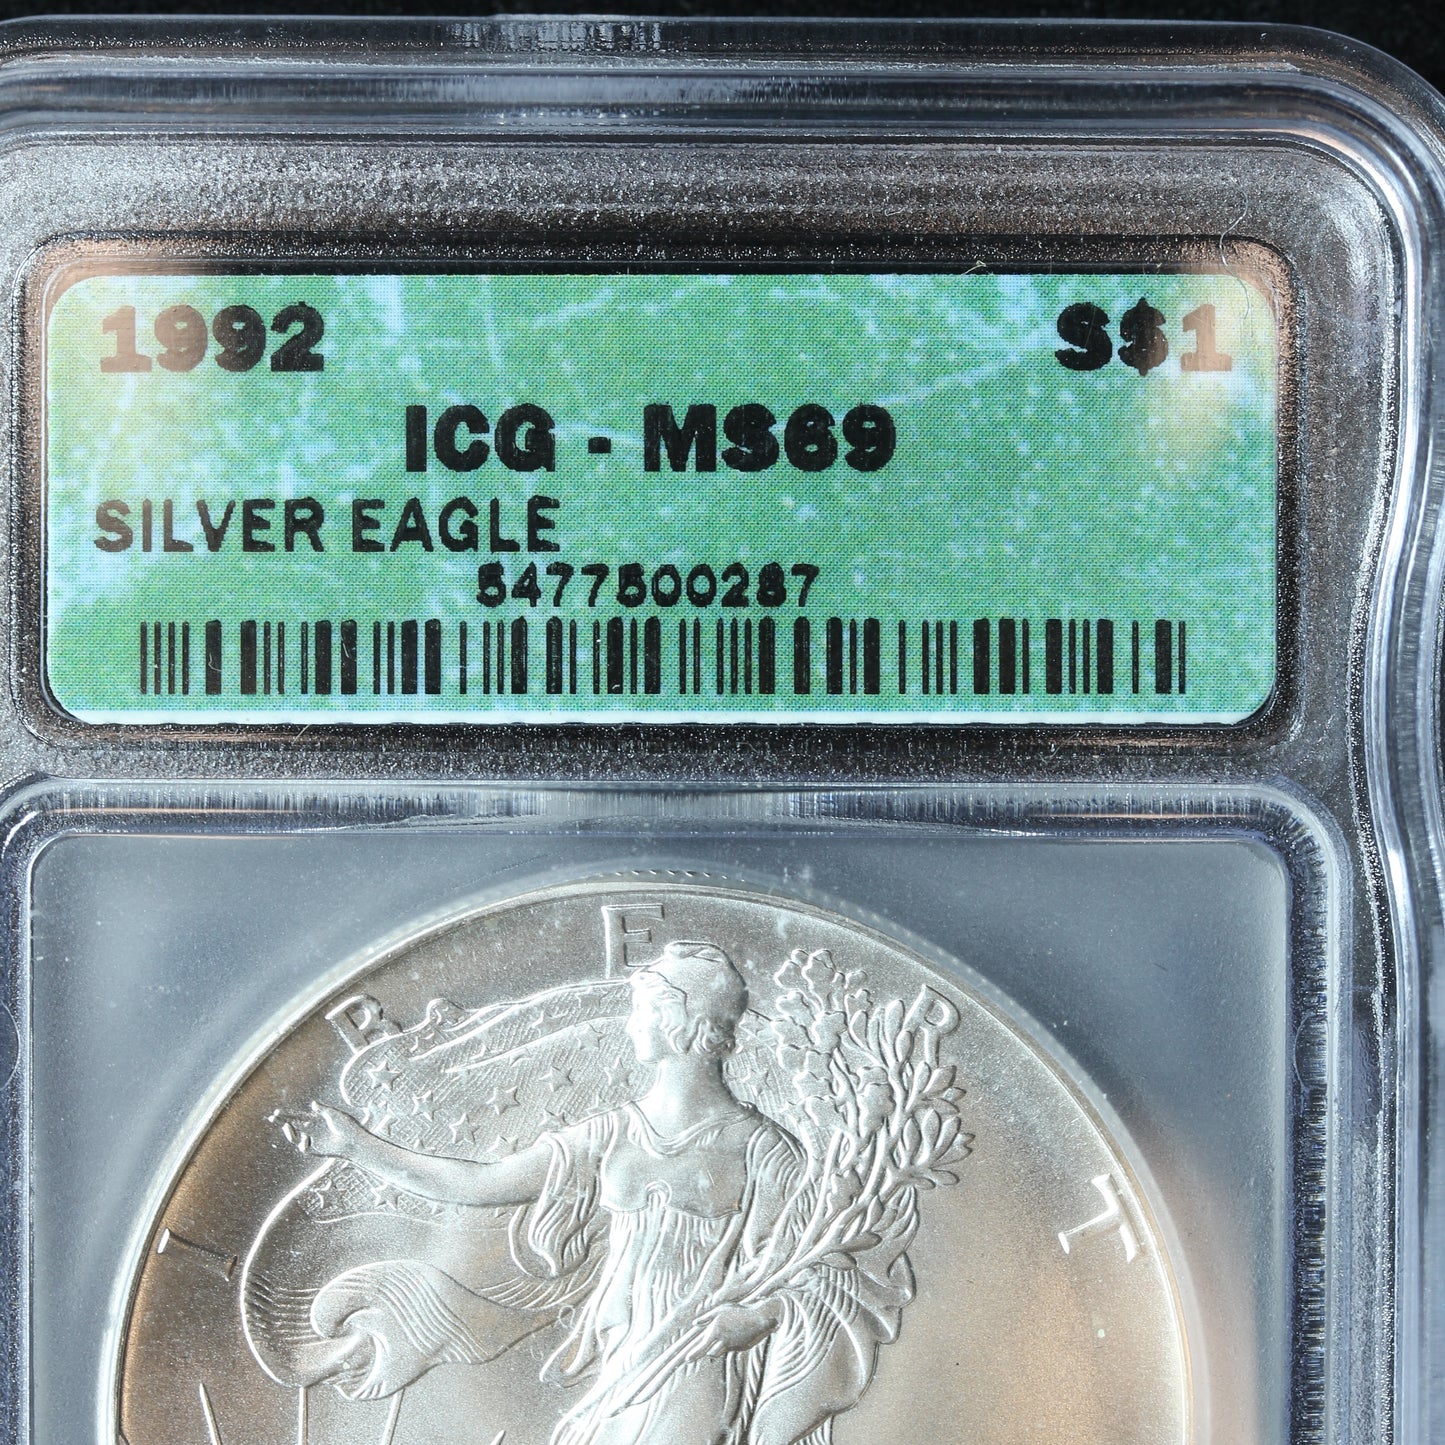 1992 American Silver Eagle $1 .999 Fine Silver - ICG MS 69